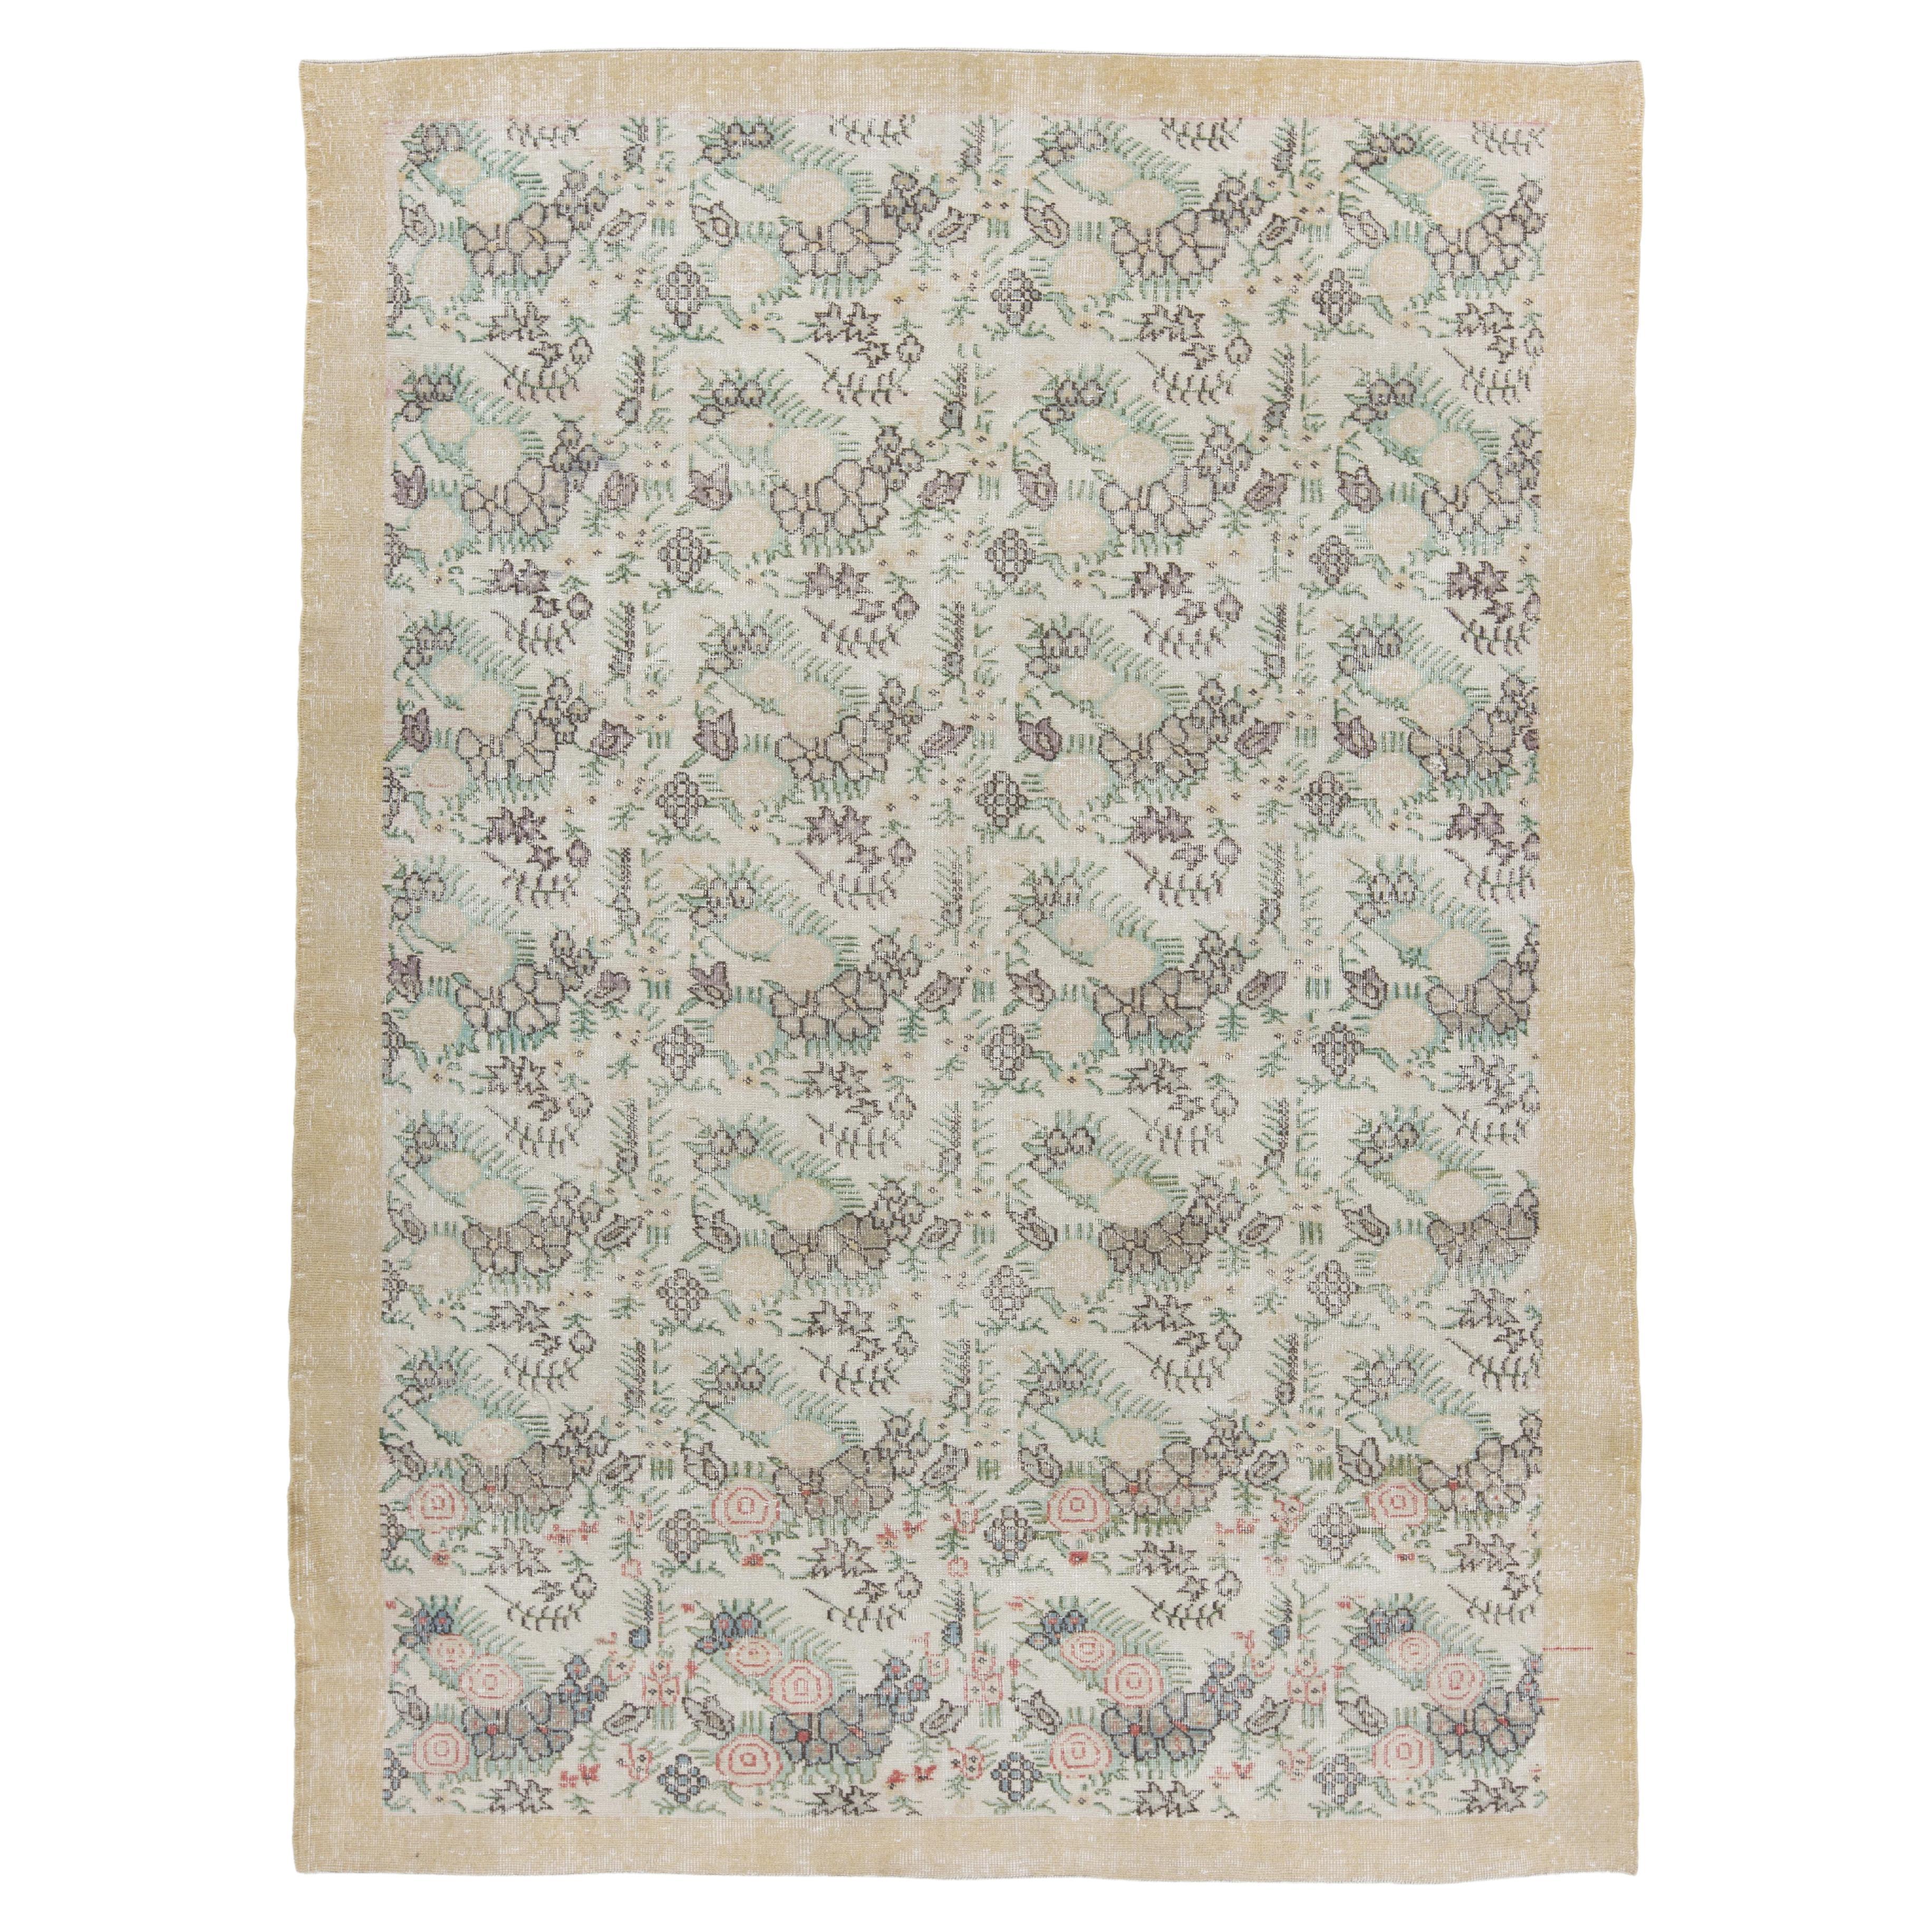 7.3x10.2 Ft Vintage Anatolischer Teppich mit floralem Design, großer handgefertigter Teppich